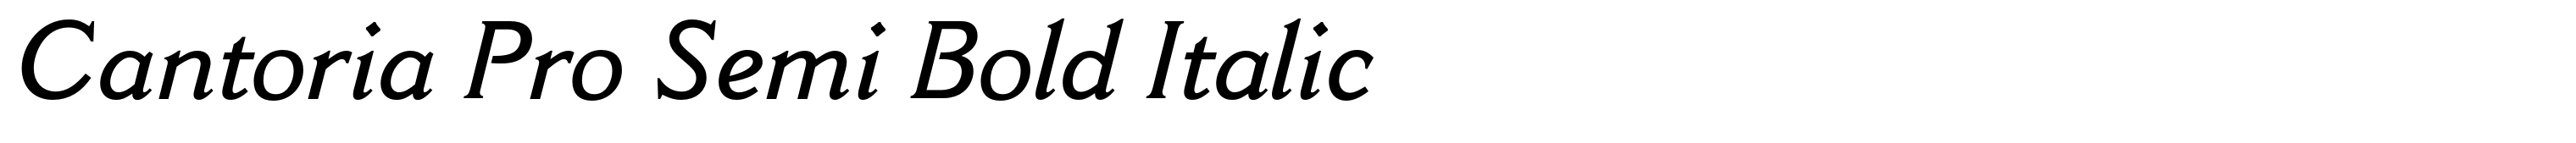 Cantoria Pro Semi Bold Italic